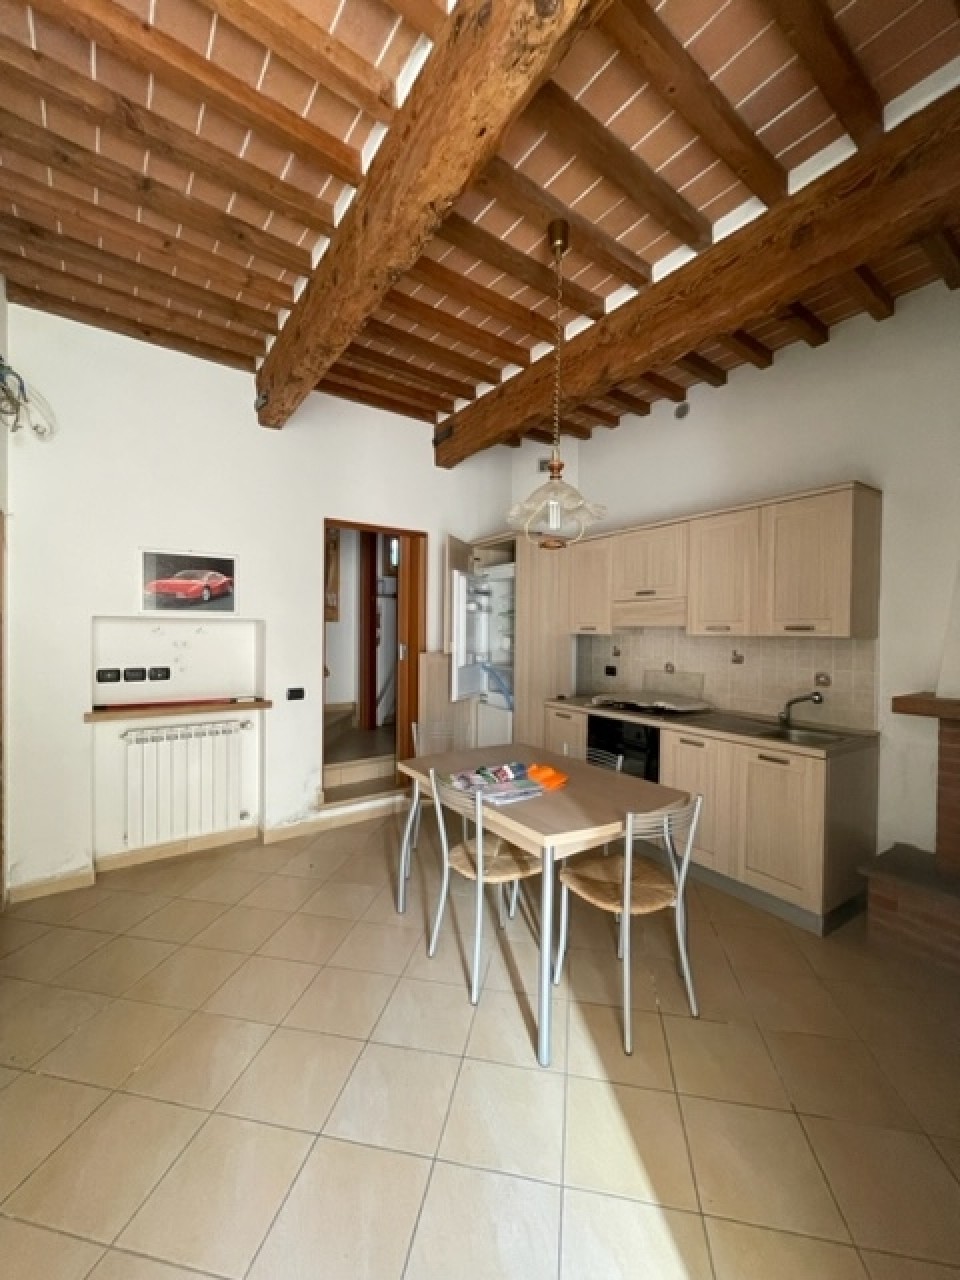 Palazzo / Stabile in vendita a Pistoia, 4 locali, prezzo € 135.000 | PortaleAgenzieImmobiliari.it